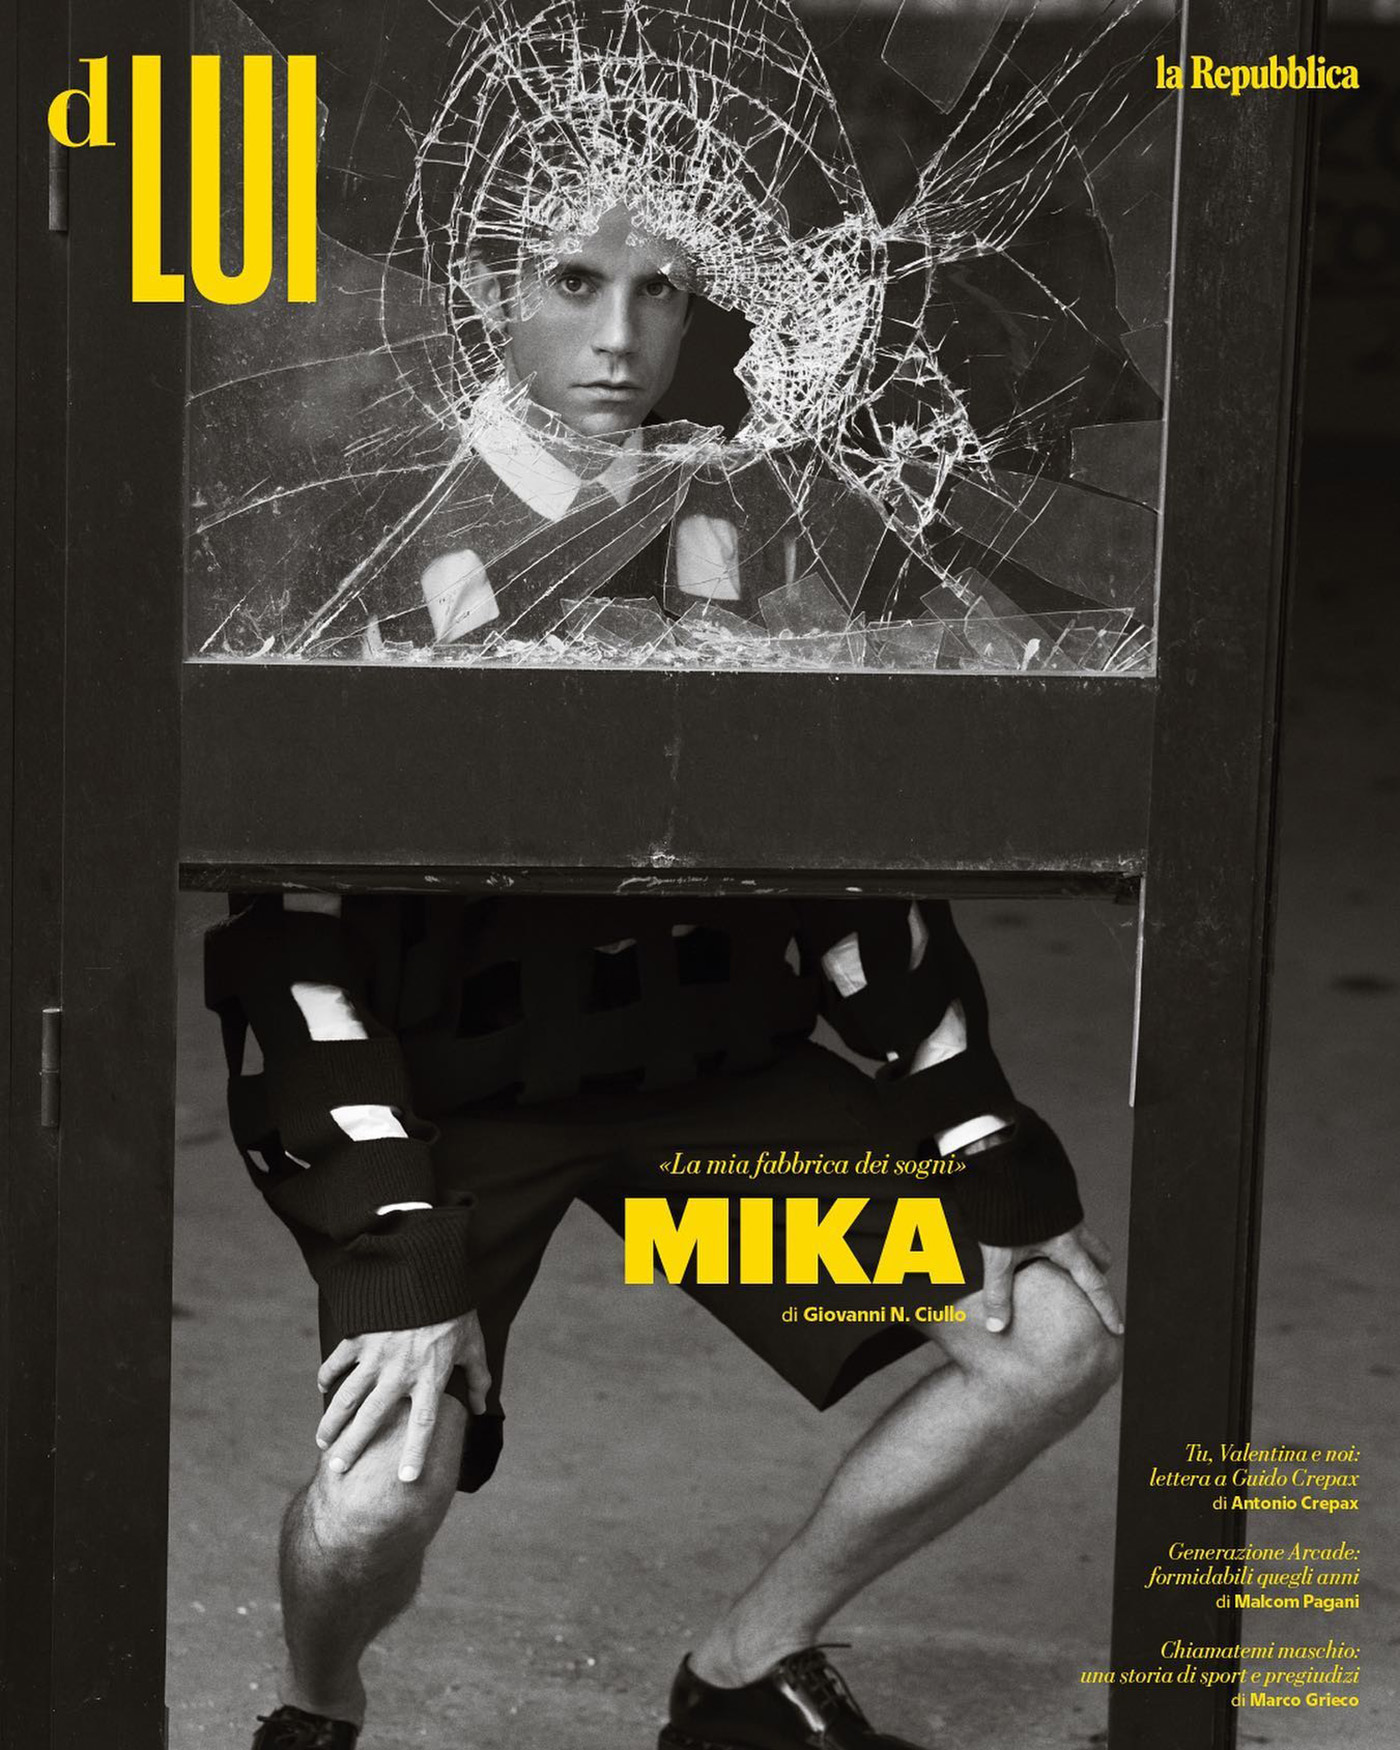 Mika in Valentino on D Lui la Repubblica June 10th, 2023 by Daniel Riera